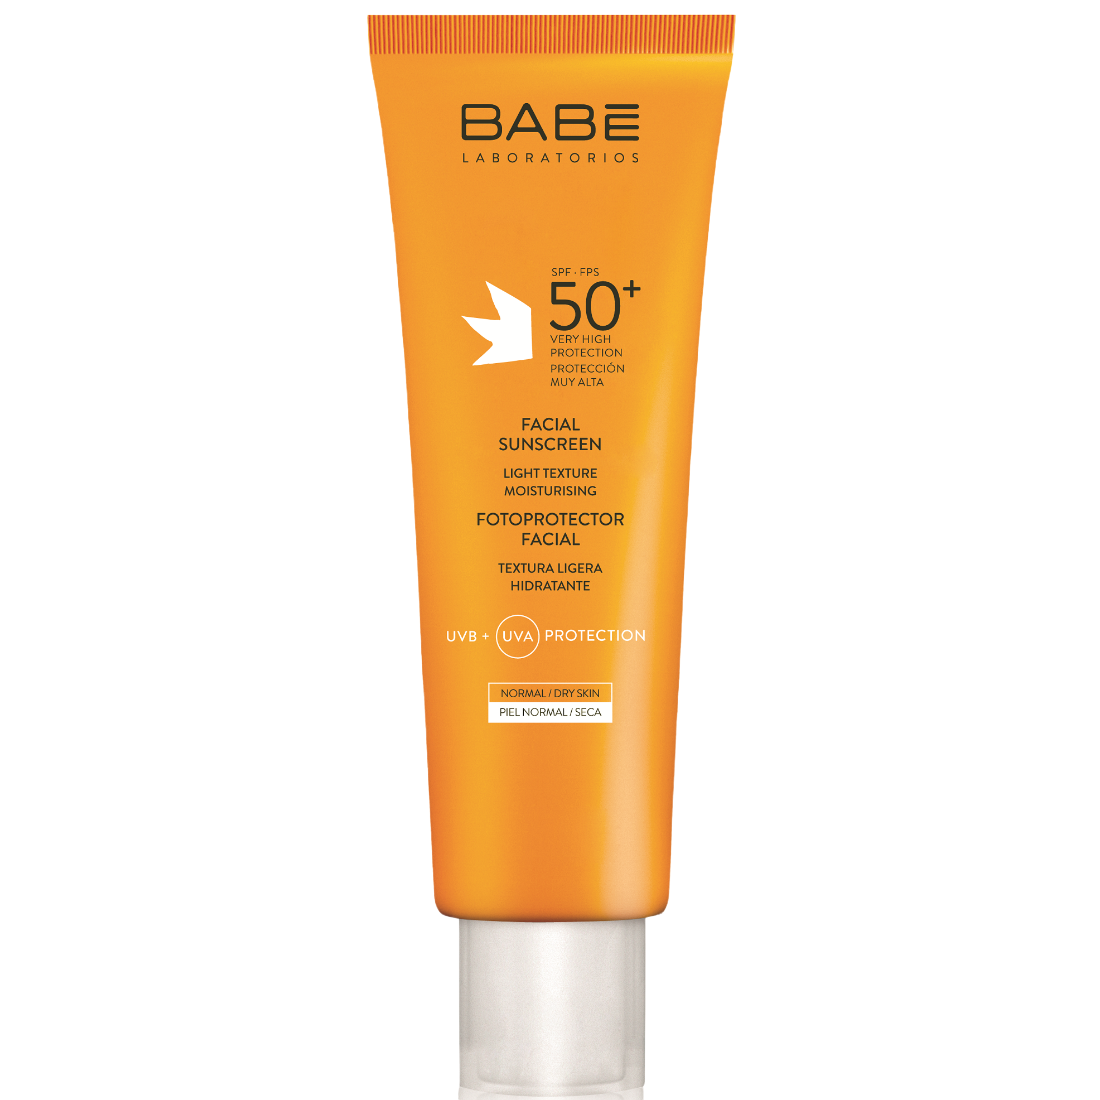 Сонцезахисний крем для сухої шкіри Babe Laboratorios Sun Protection SPF 50+, 50 мл - фото 1